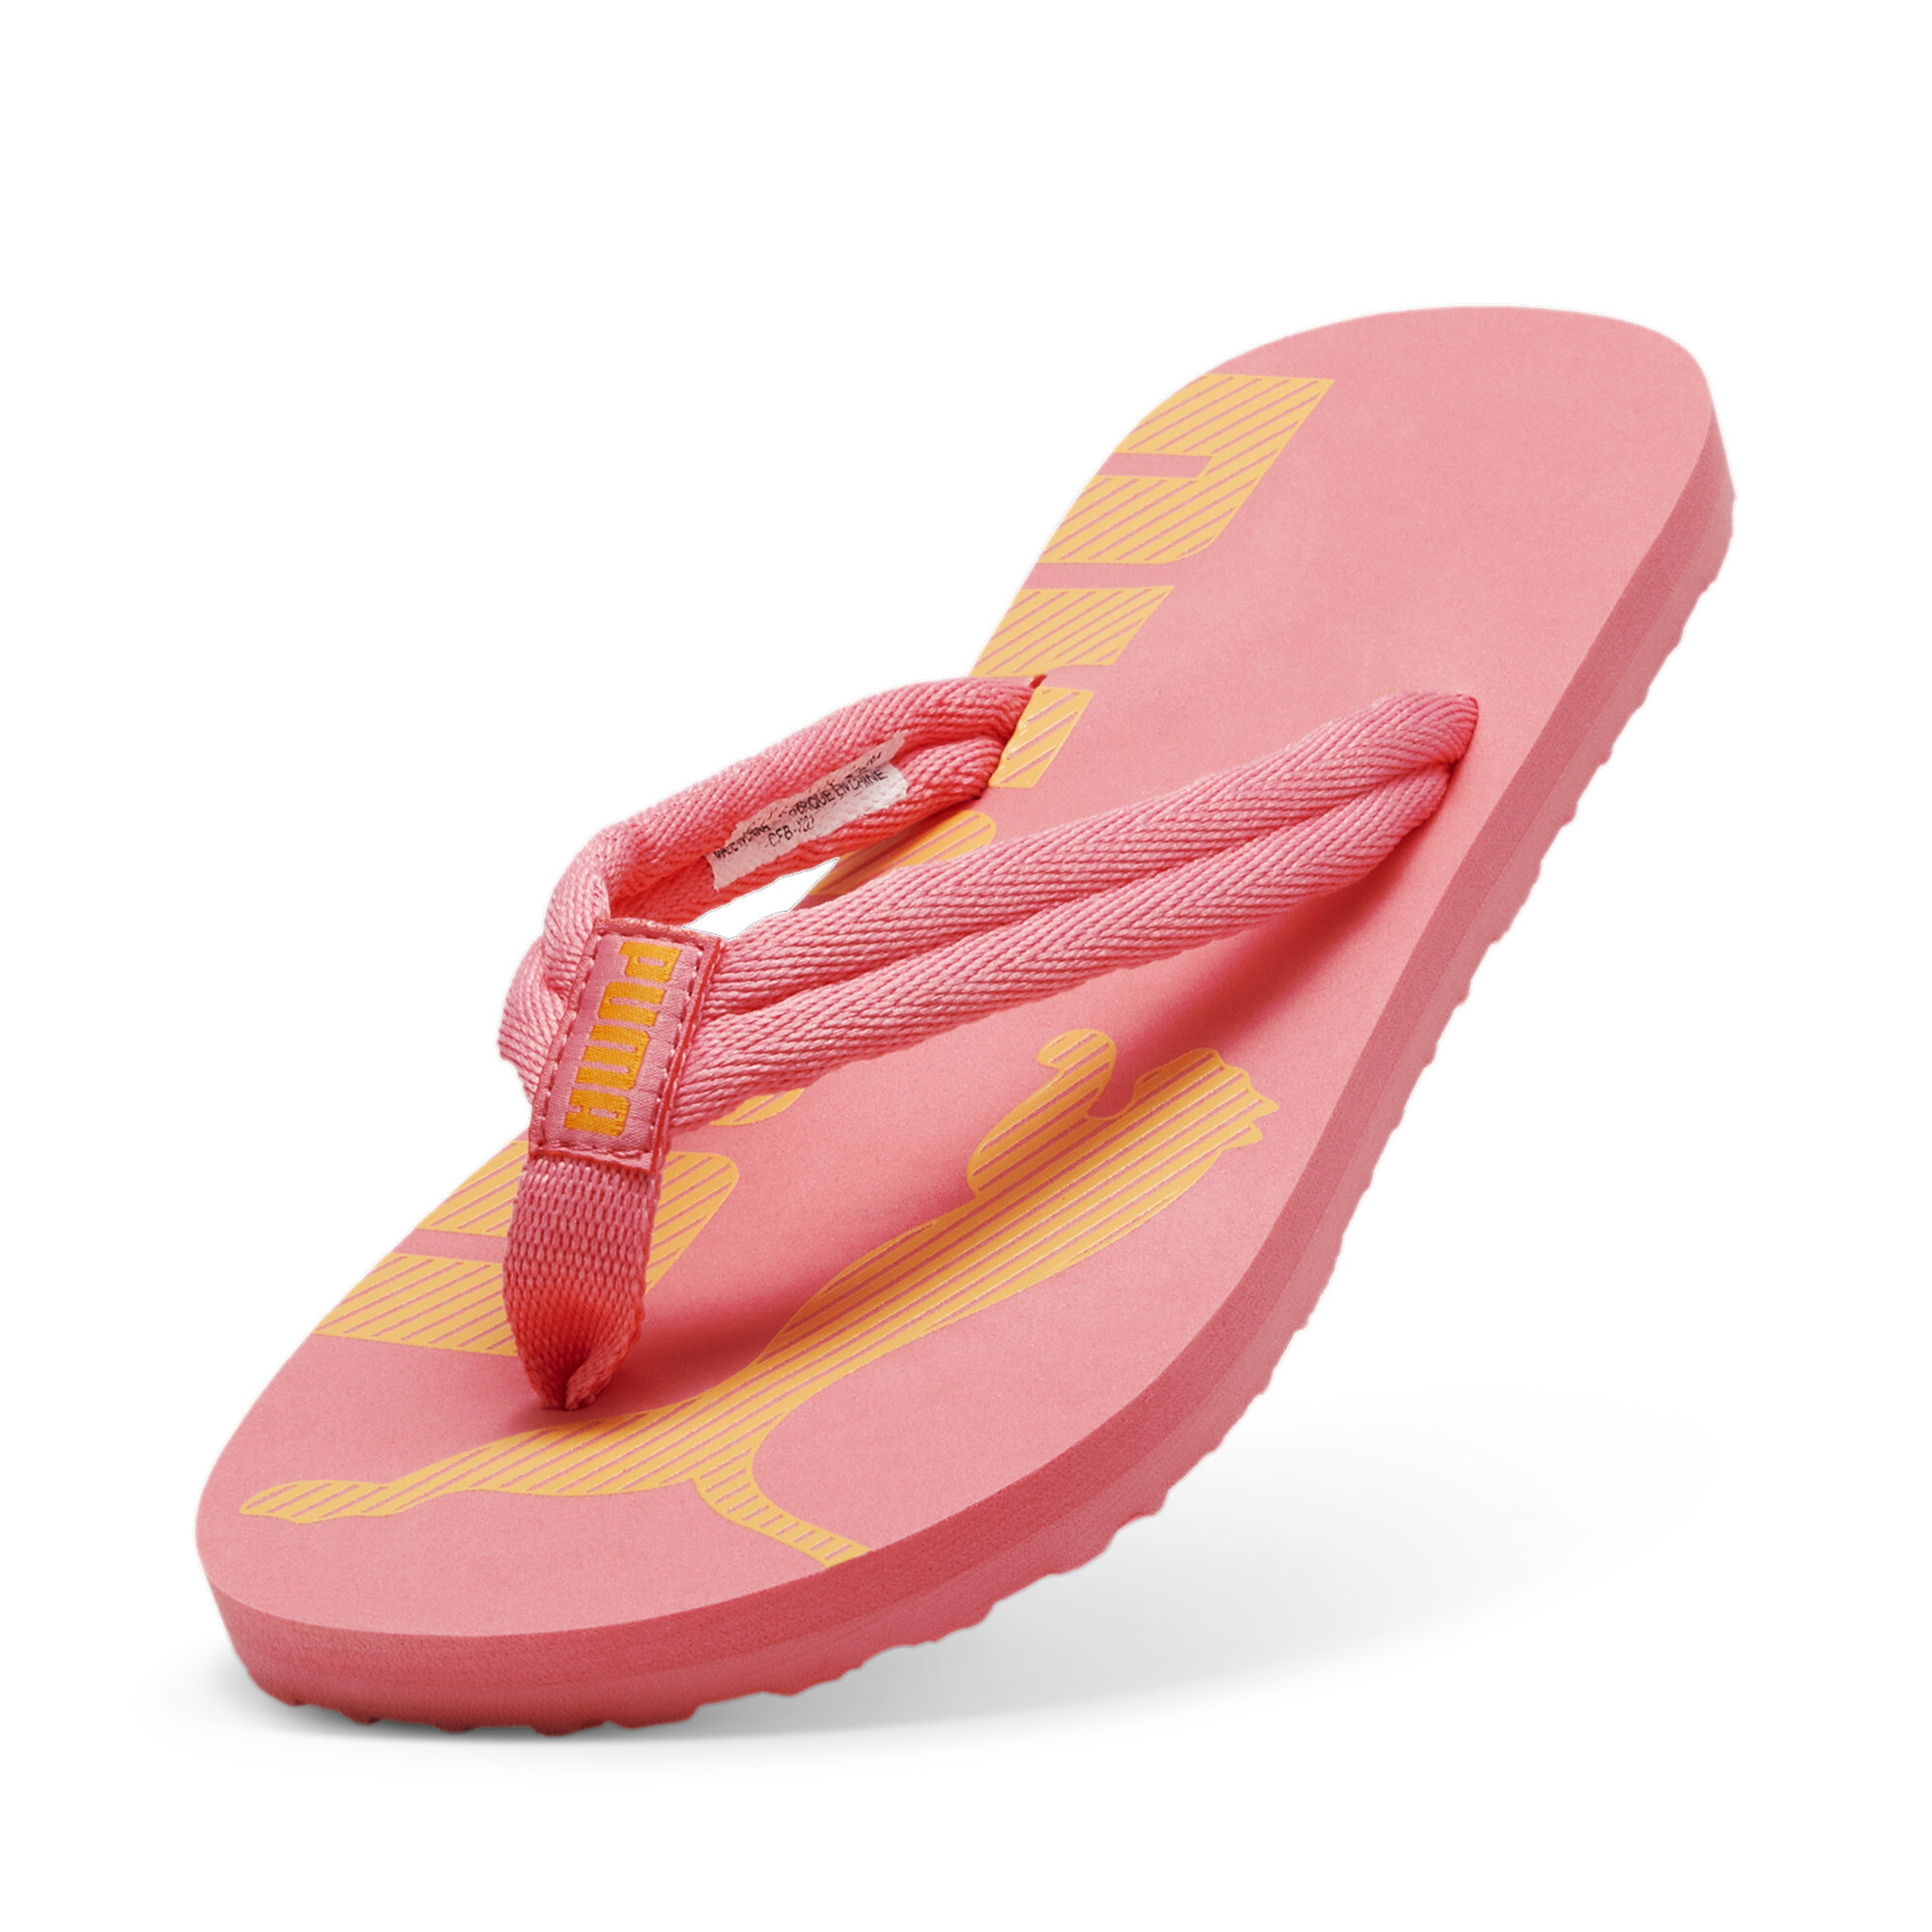 Men's PUMA Epic Flip V2 Sandals In 70 - Pink, Size EU 40.5